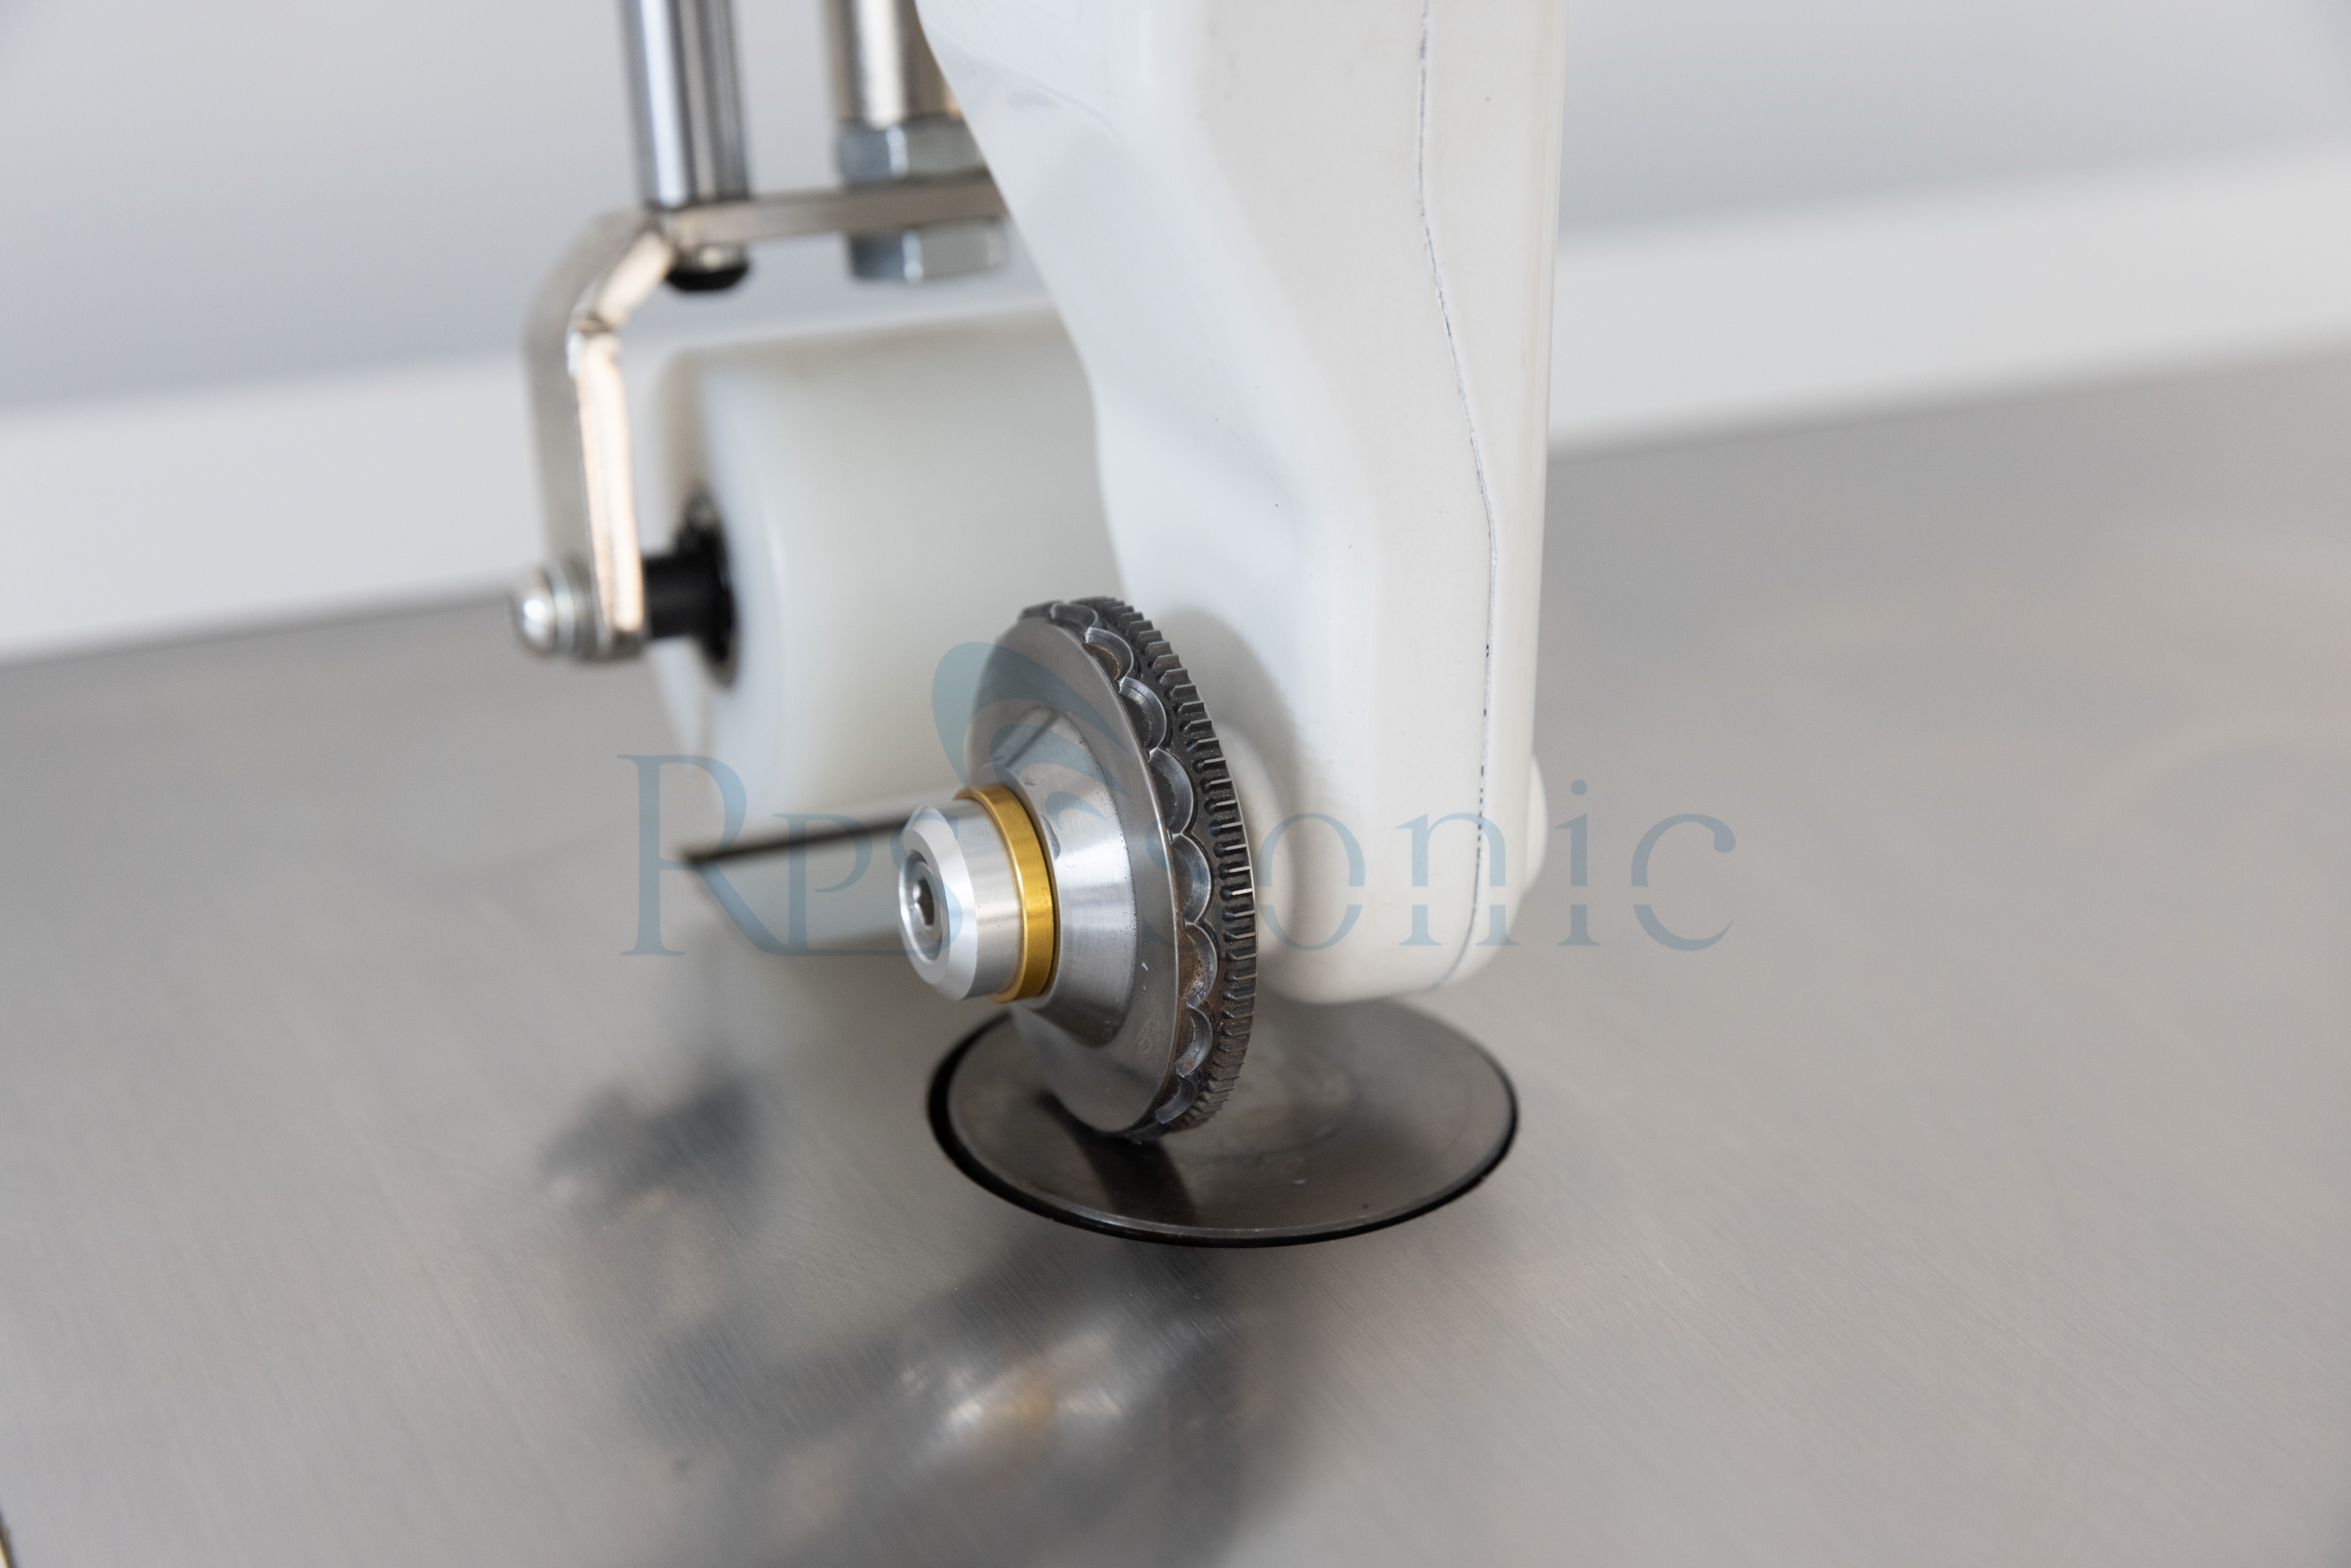 Nueva máquina de coser de encaje ultrasónico Fibet no tejido de producción de manteles